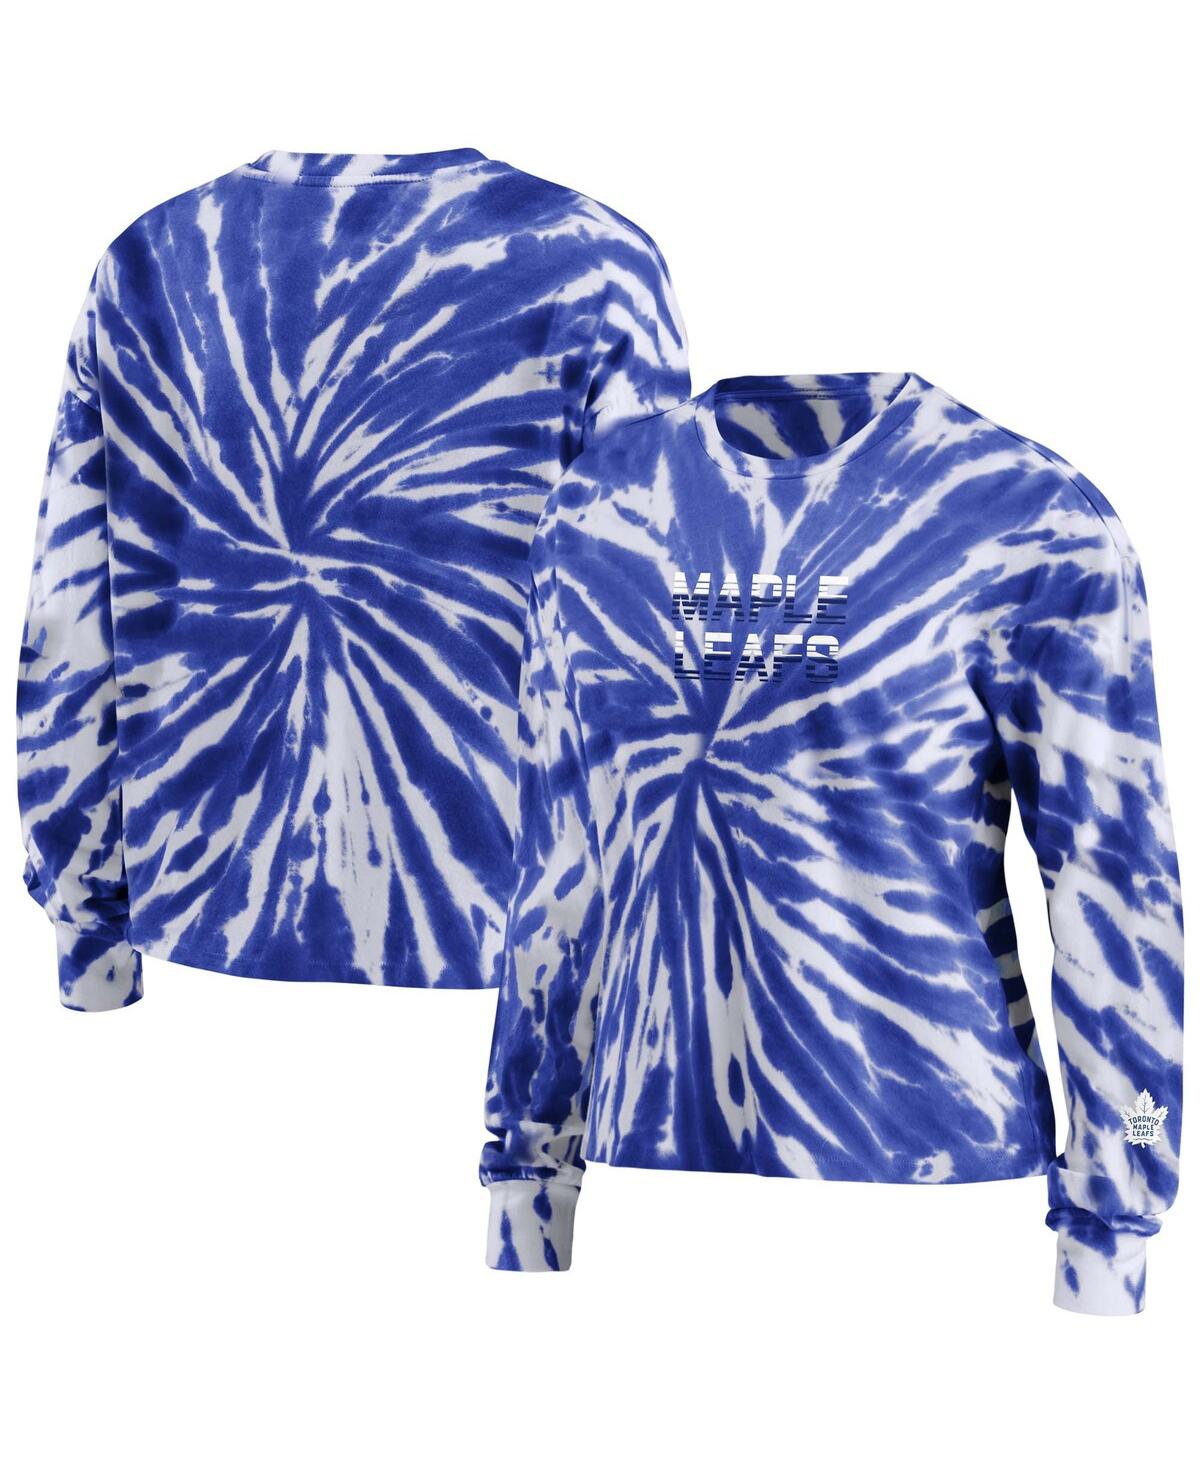 Shop Wear By Erin Andrews Women's  Blue Toronto Maple Leafs Tie-dye Long Sleeve T-shirt